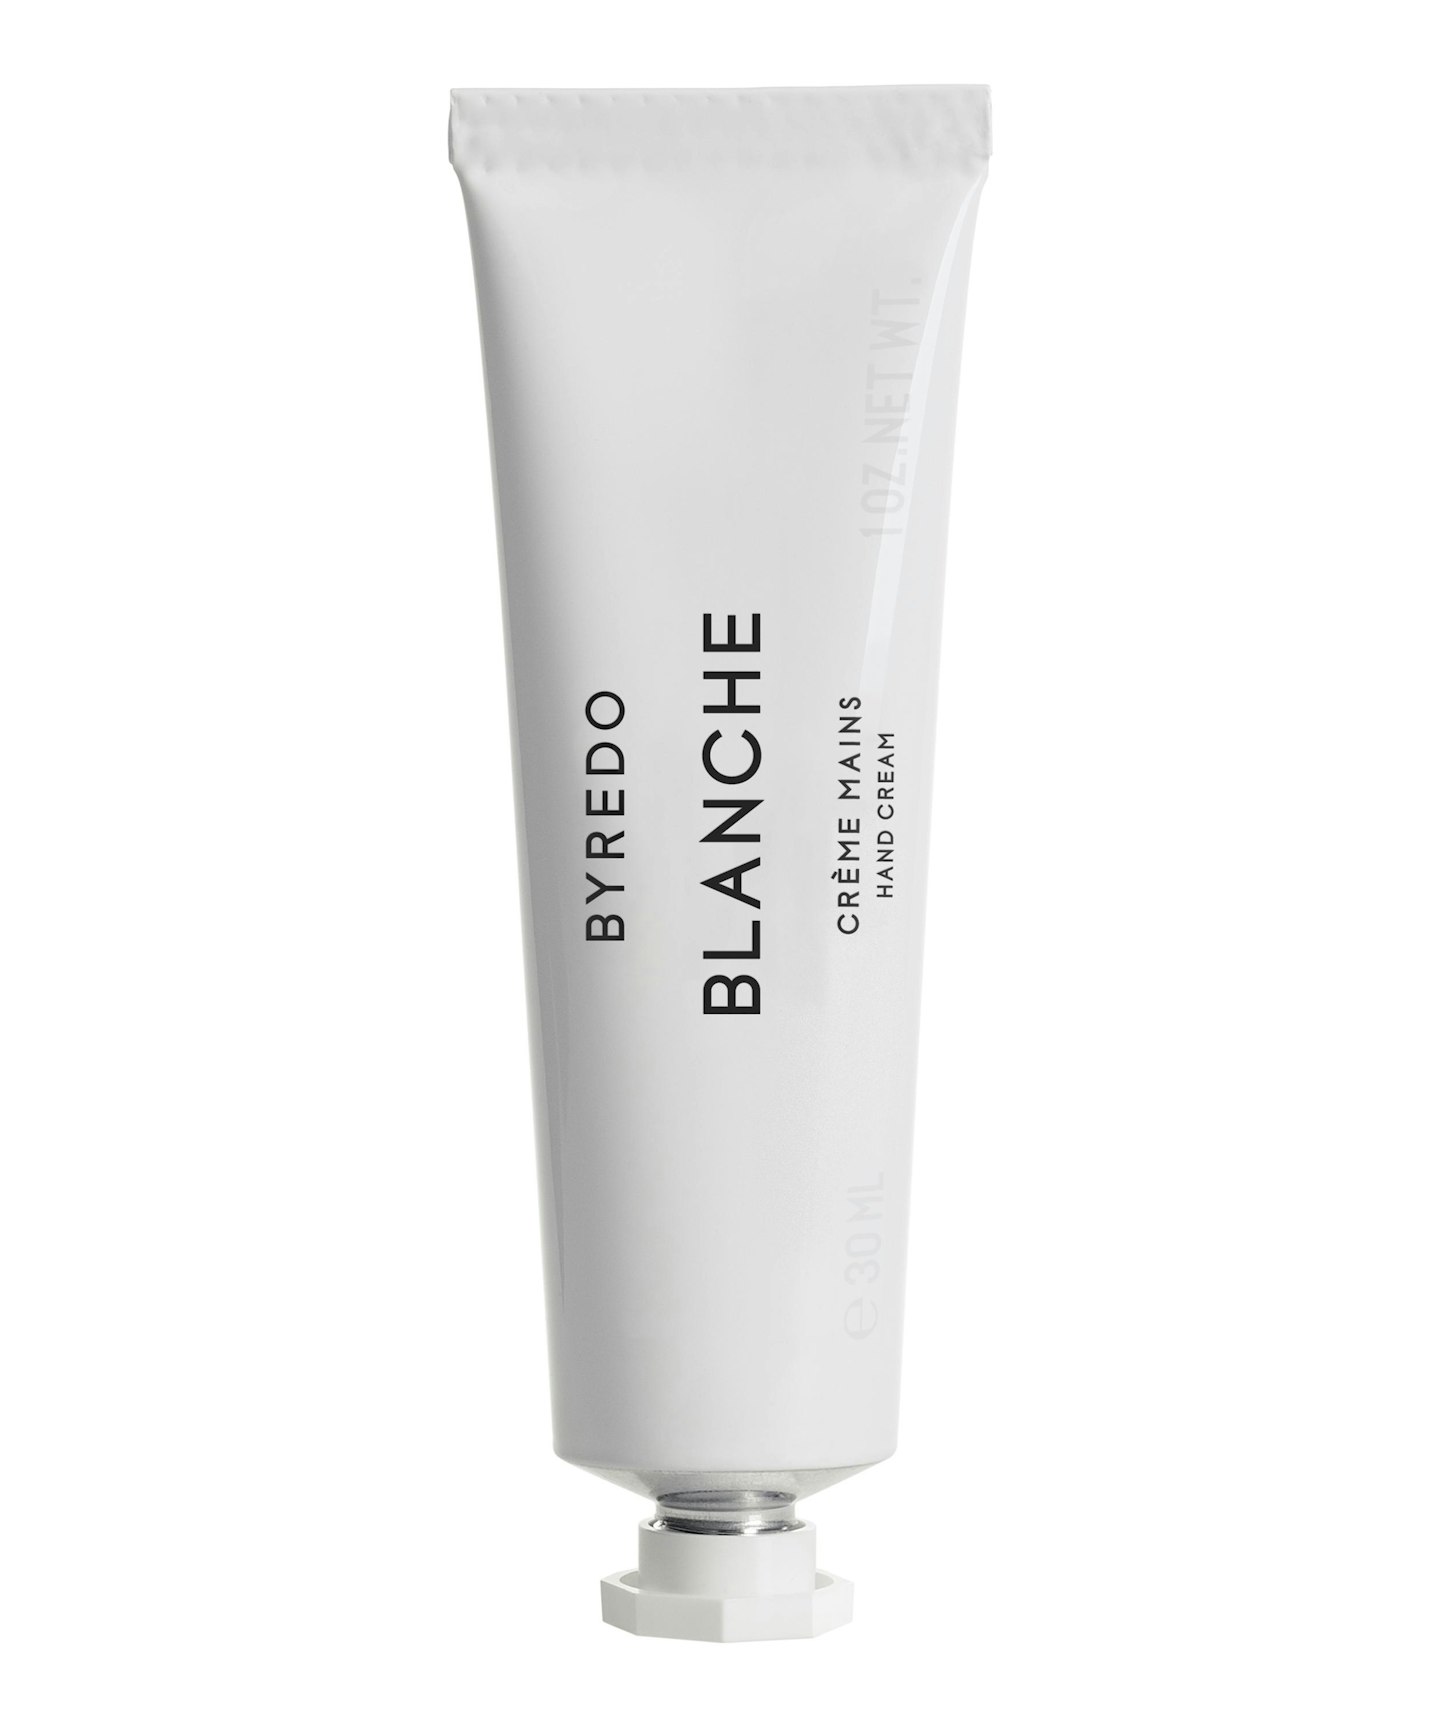 Byredo Blanche Hand Cream Travel Size